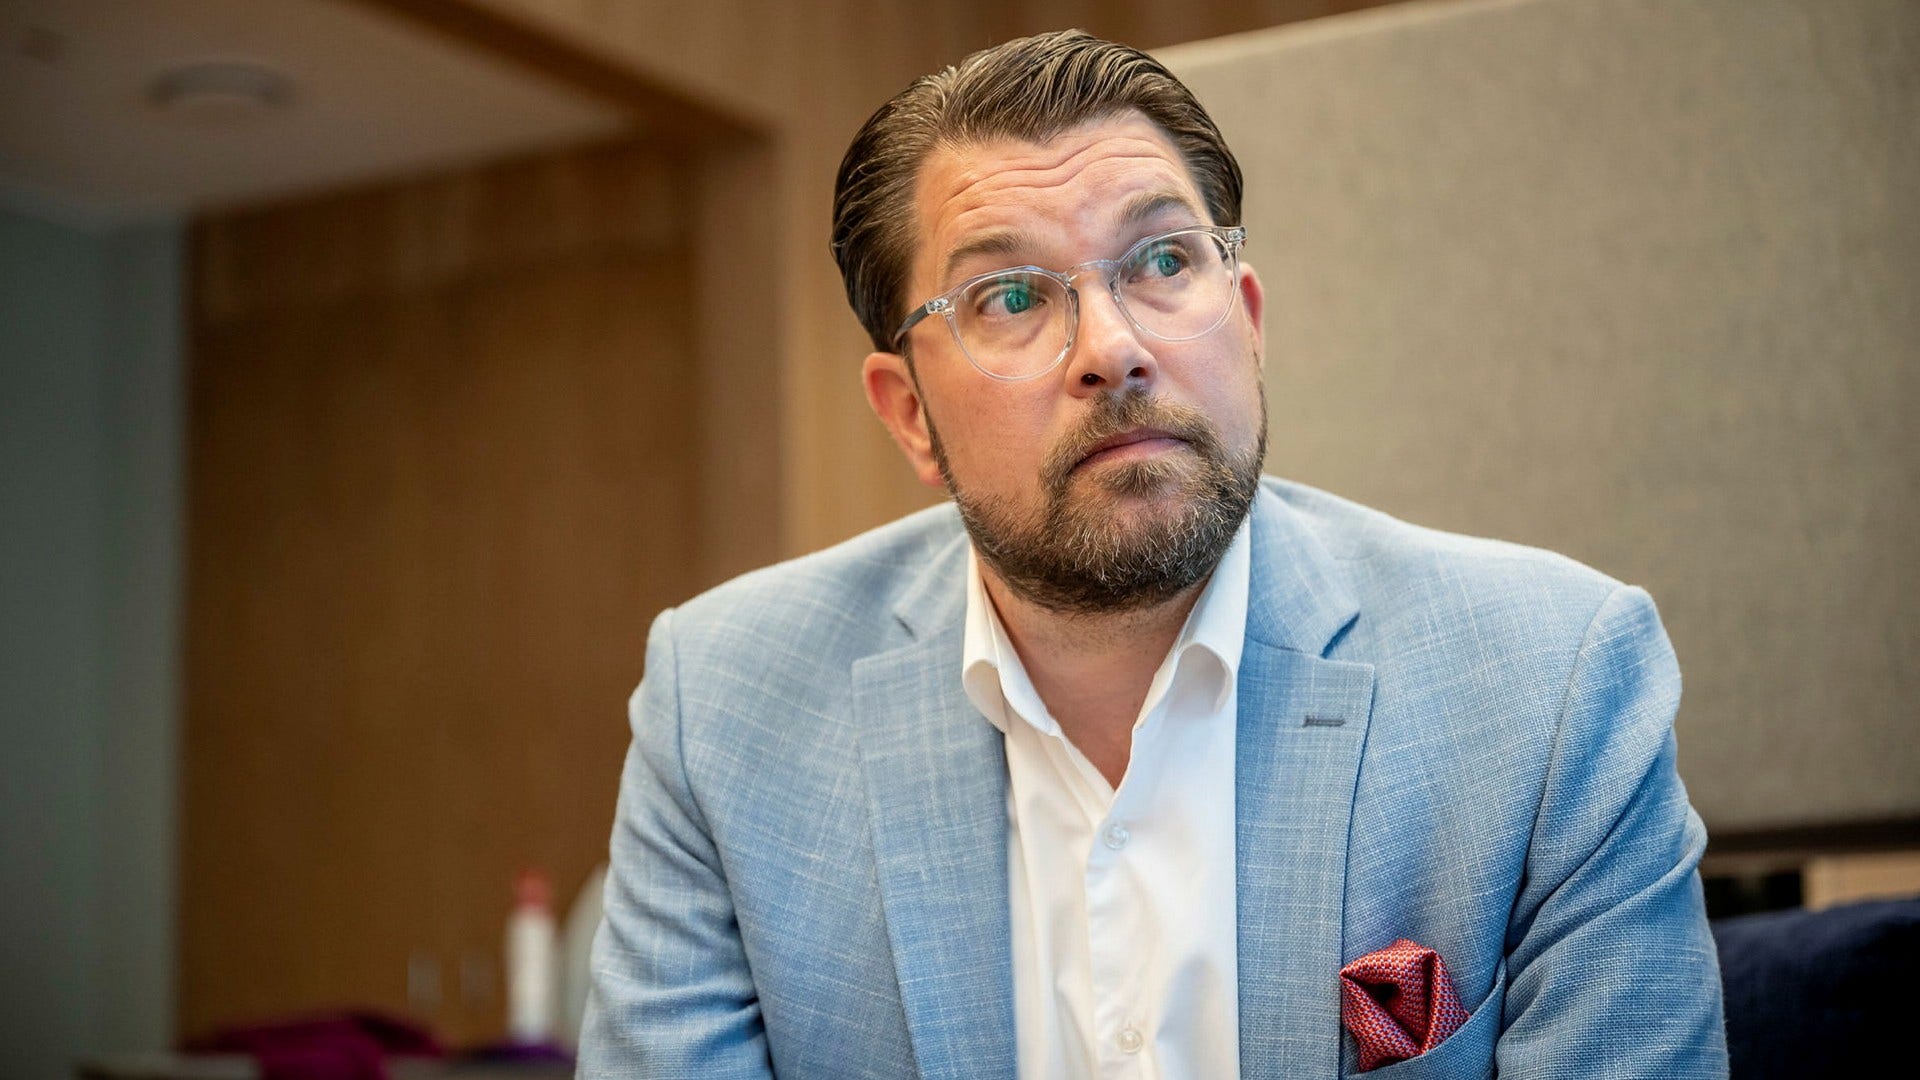 Sverigedemokraternas partiledare Jimmie Åkessons språkbruk måste fördömas av regeringspartierna, anser insändarskribenten.